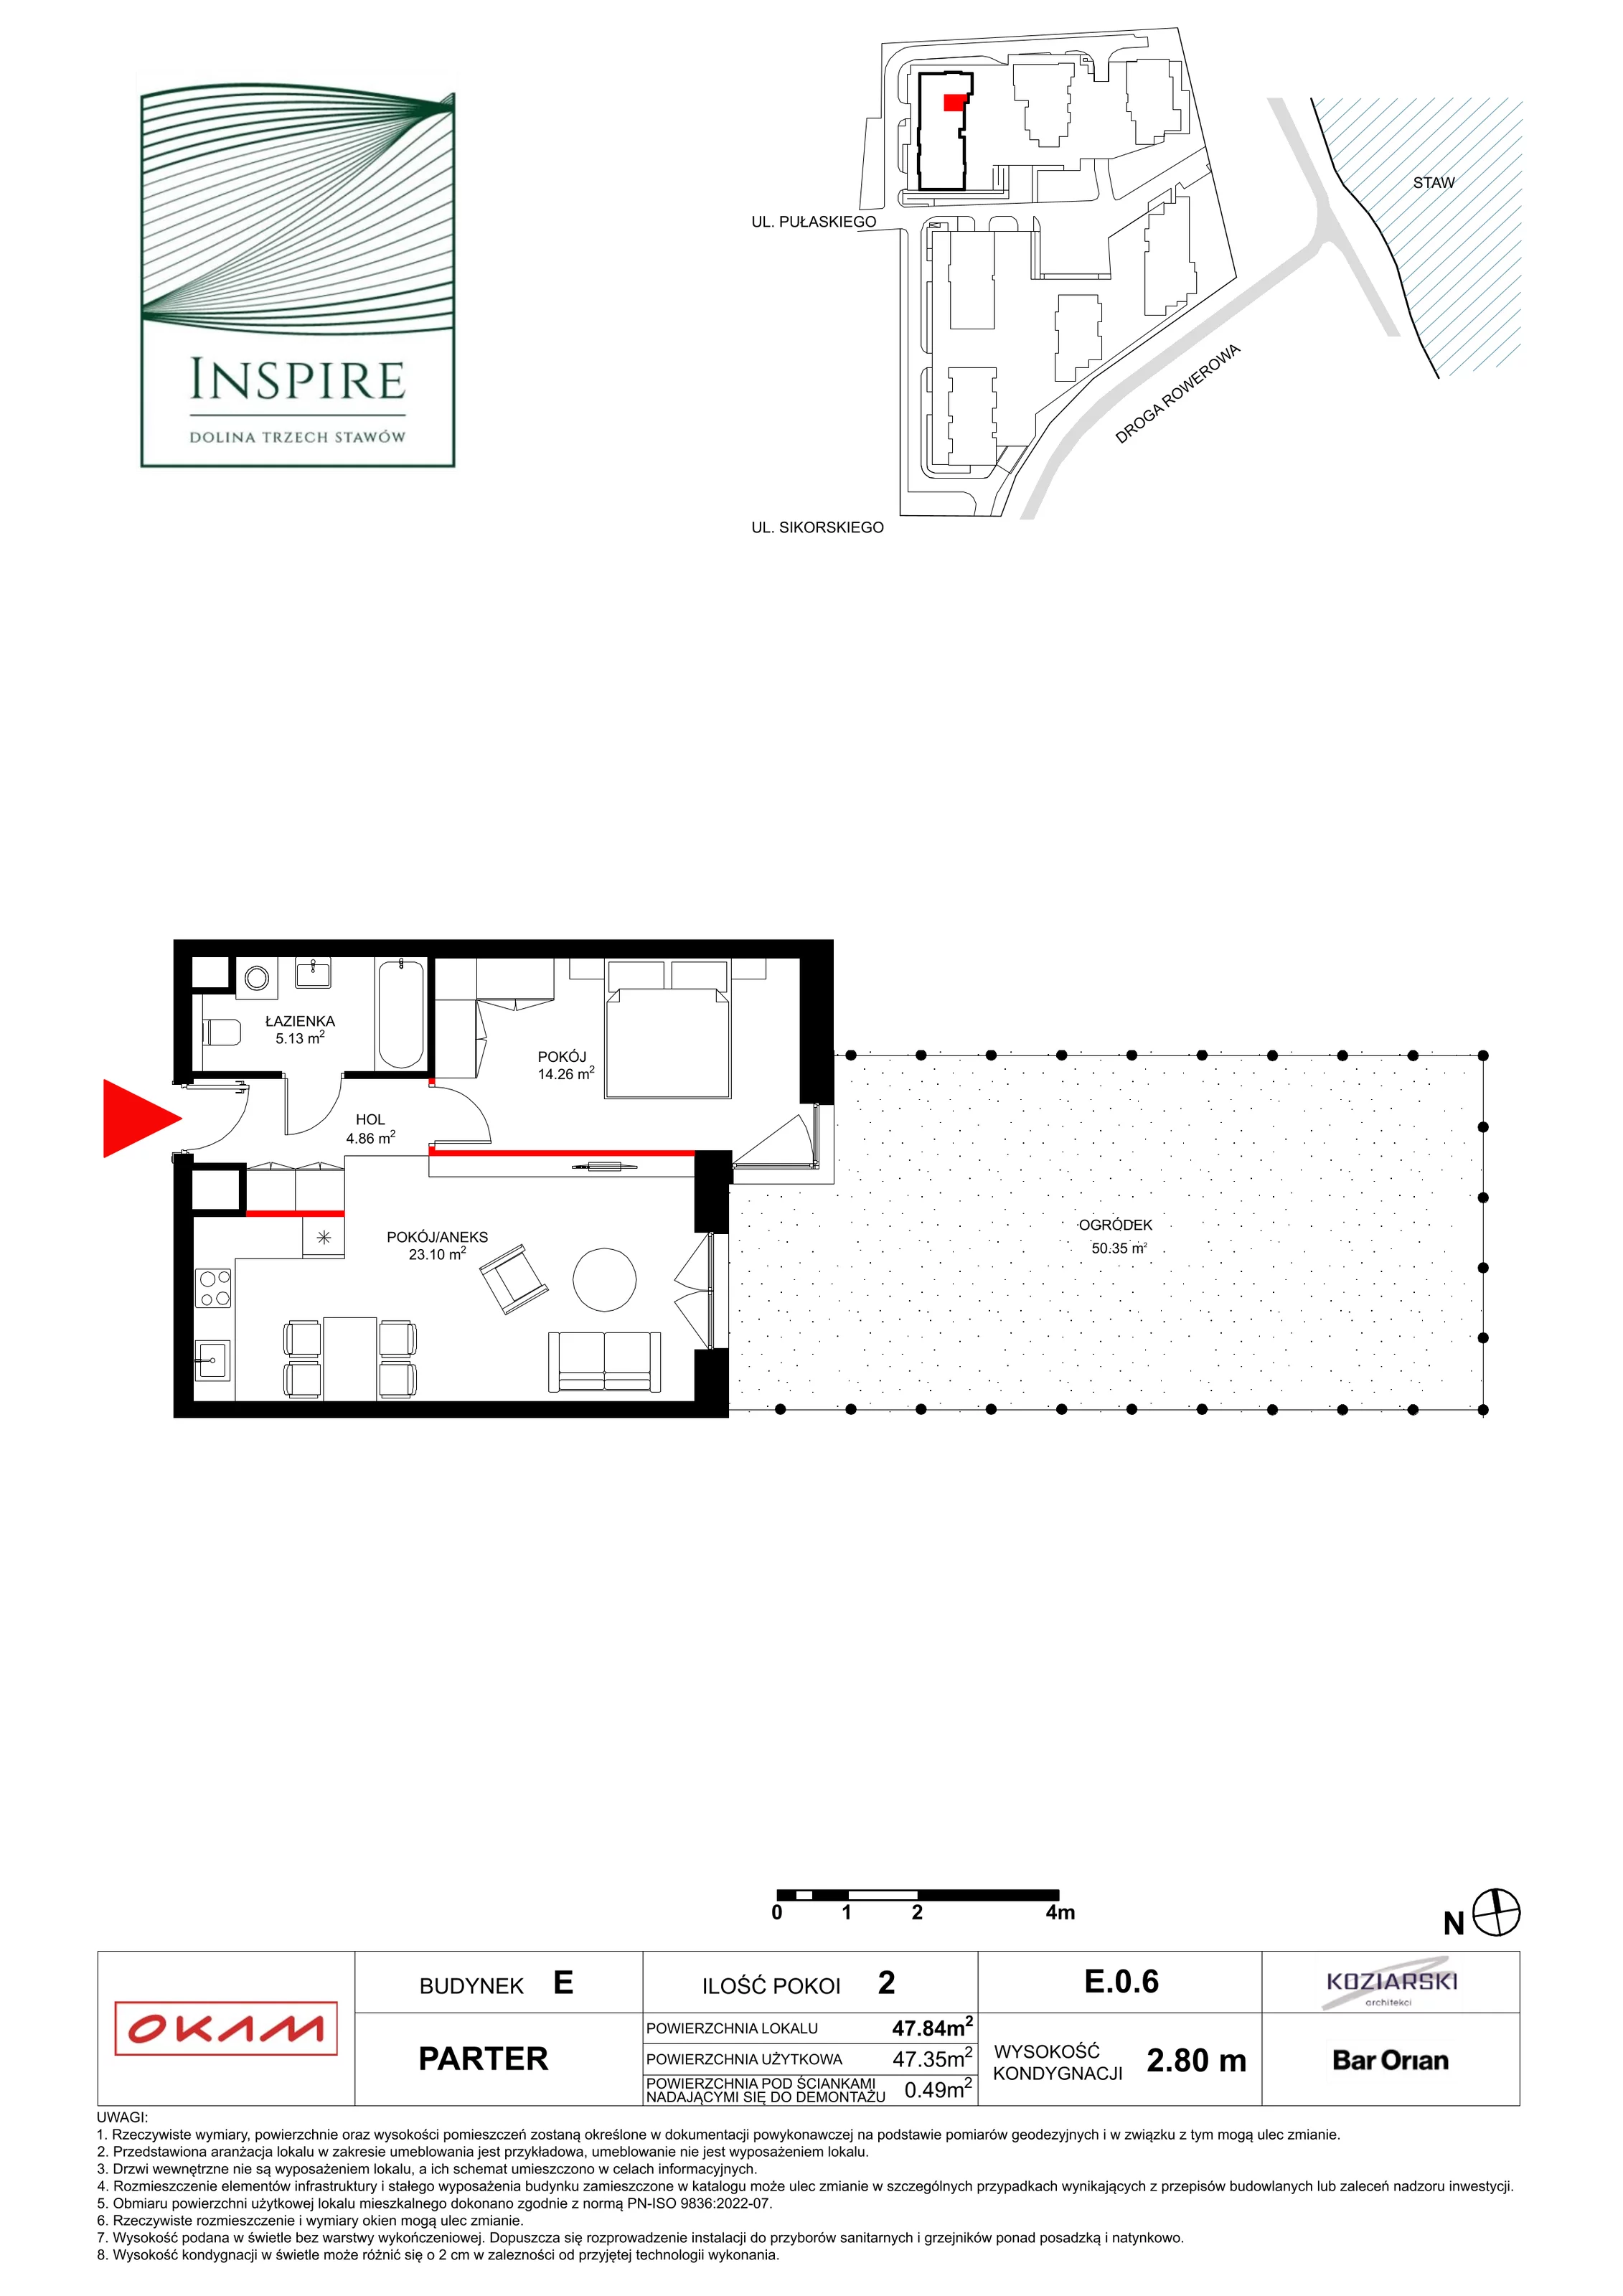 Apartament 47,35 m², parter, oferta nr E.0.6, Inspire, Katowice, Osiedle Paderewskiego-Muchowiec, Dolina Trzech Stawów, ul. gen. Sikorskiego 41